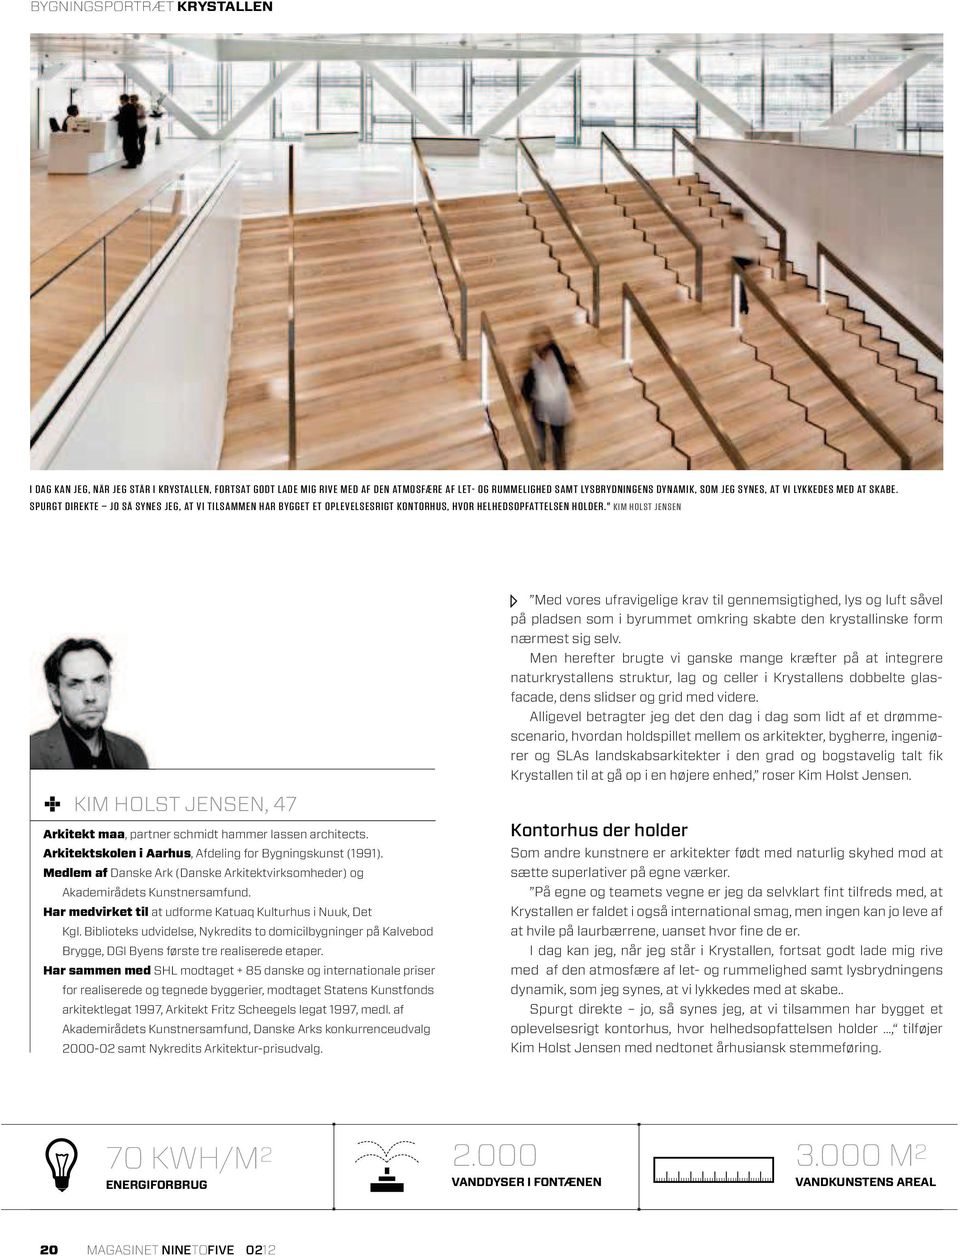 " KIM HOLST JENSEN KIM HOLST JENSEN, 47 Arkitekt maa, partner schmidt hammer lassen architects. Arkitektskolen i Aarhus, Afdeling for Bygningskunst (1991).